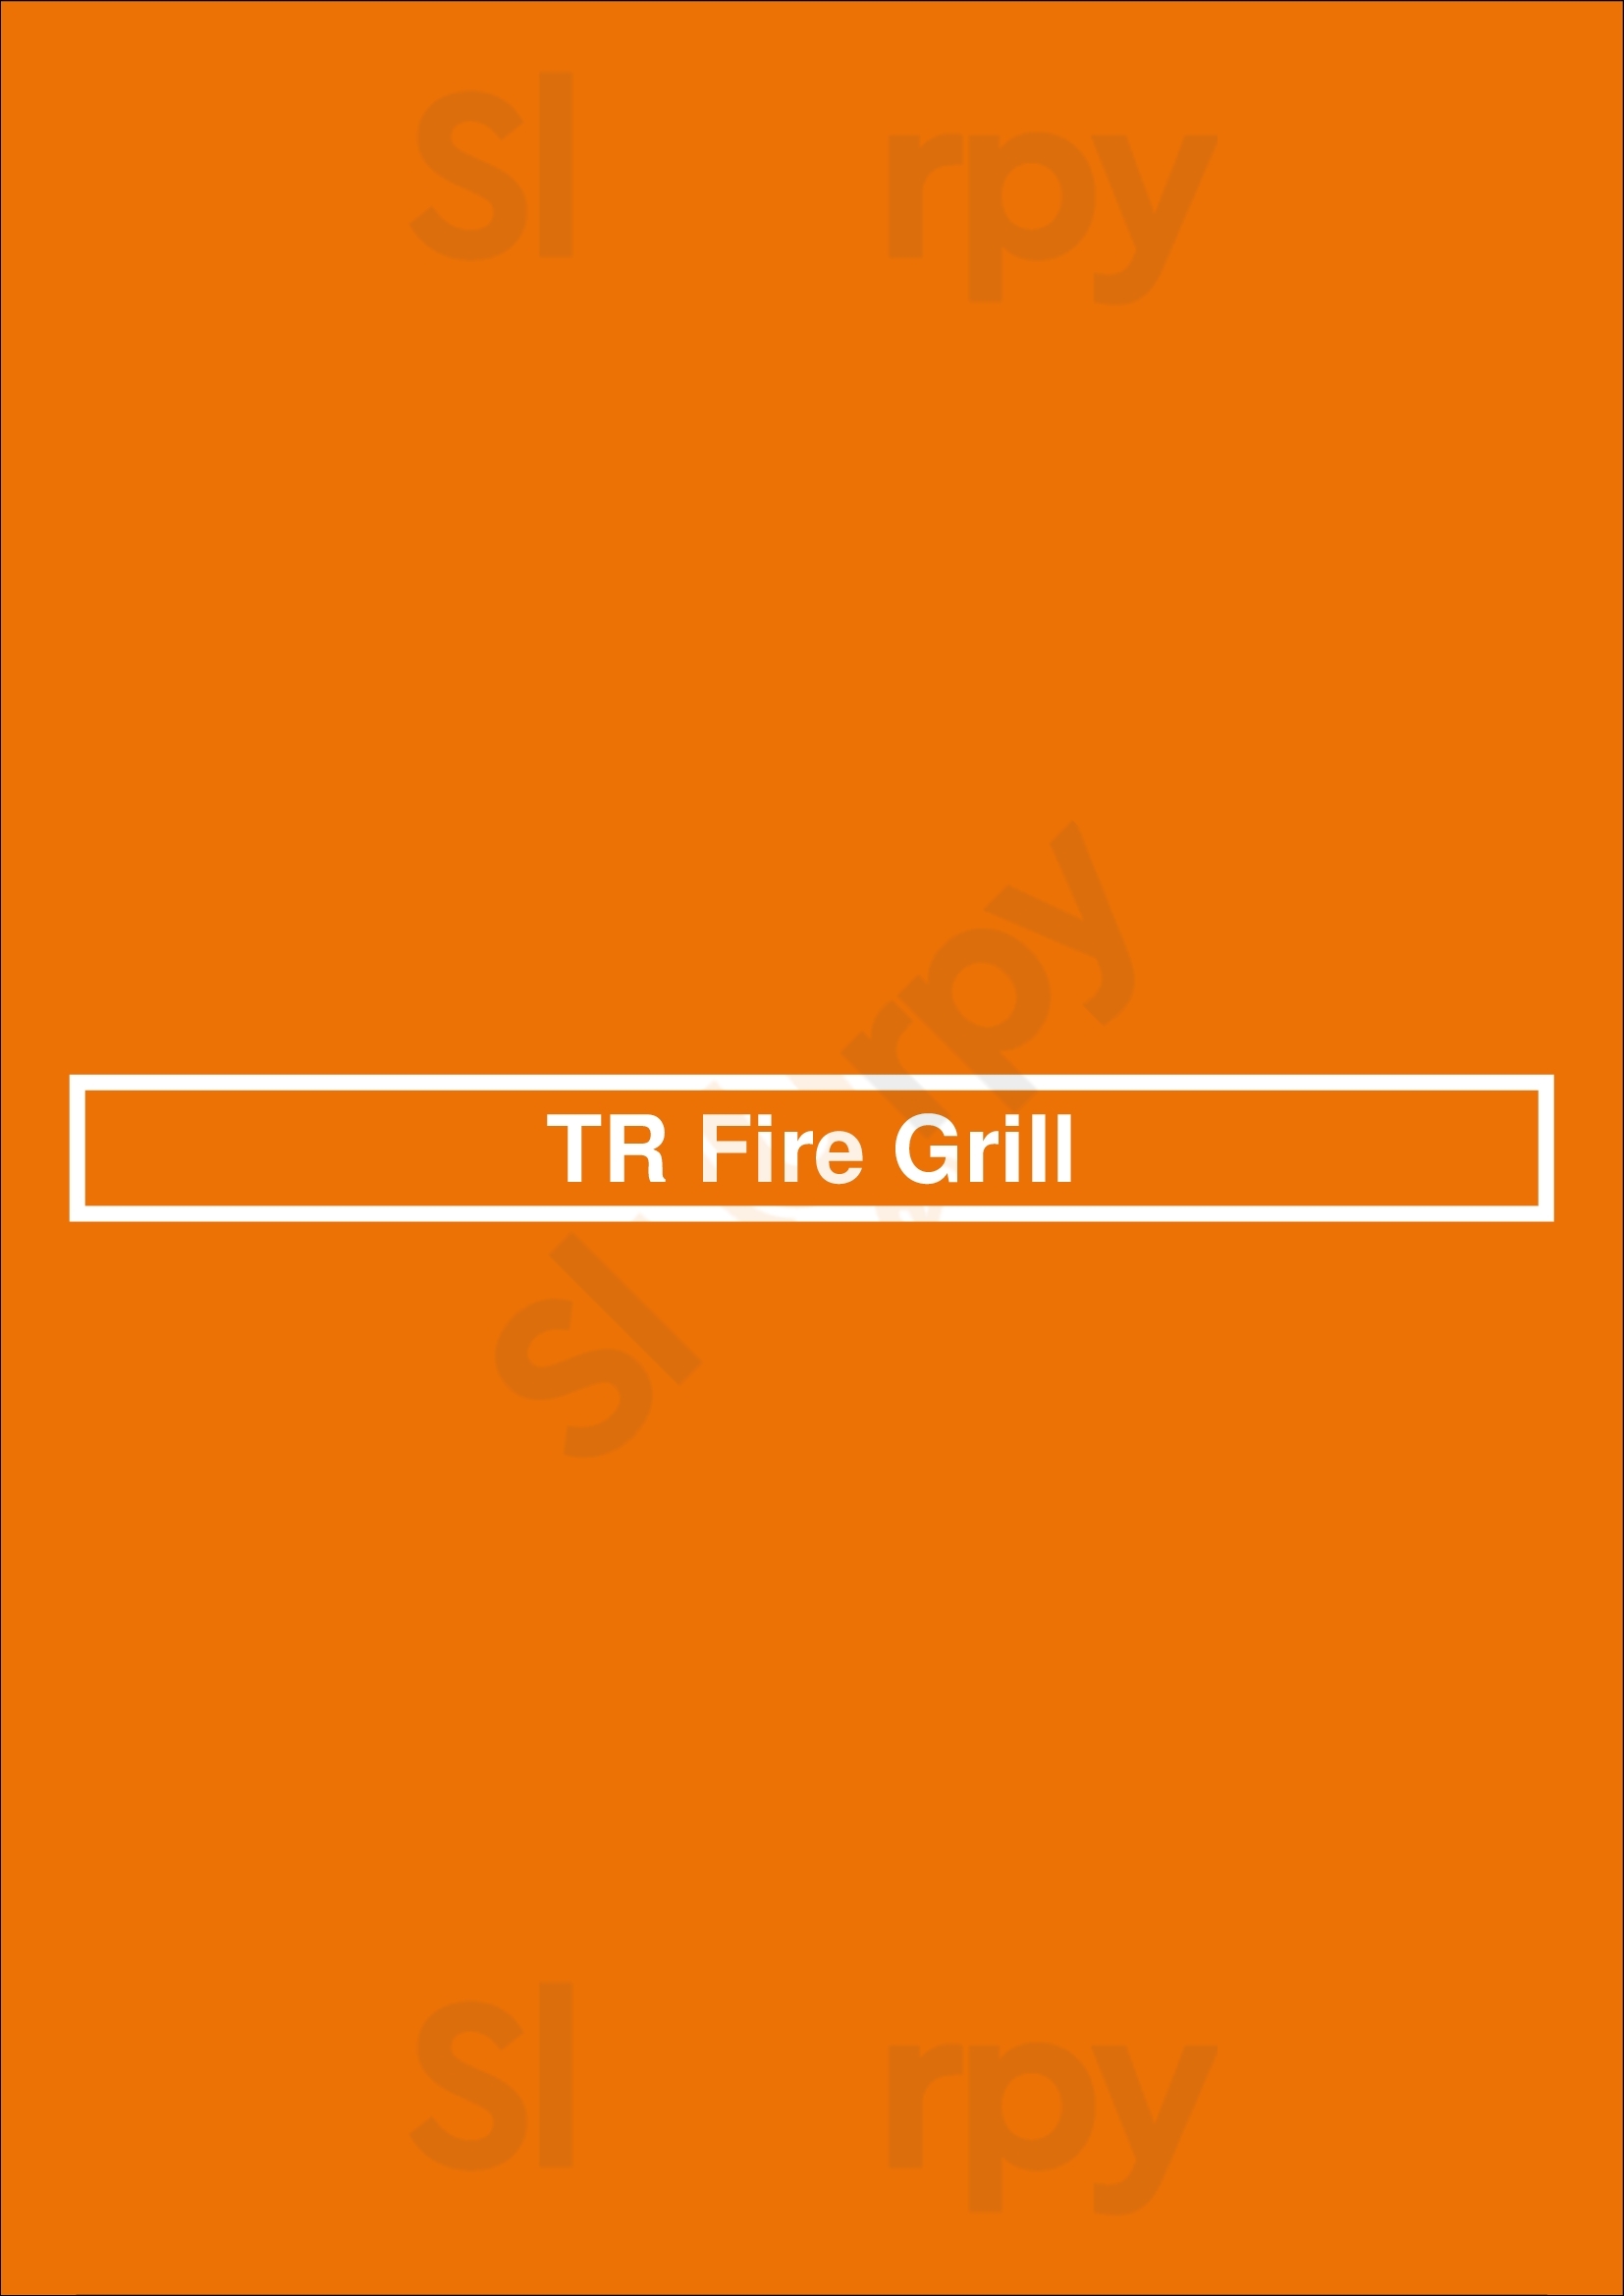 Tr Fire Grill Honolulu Menu - 1